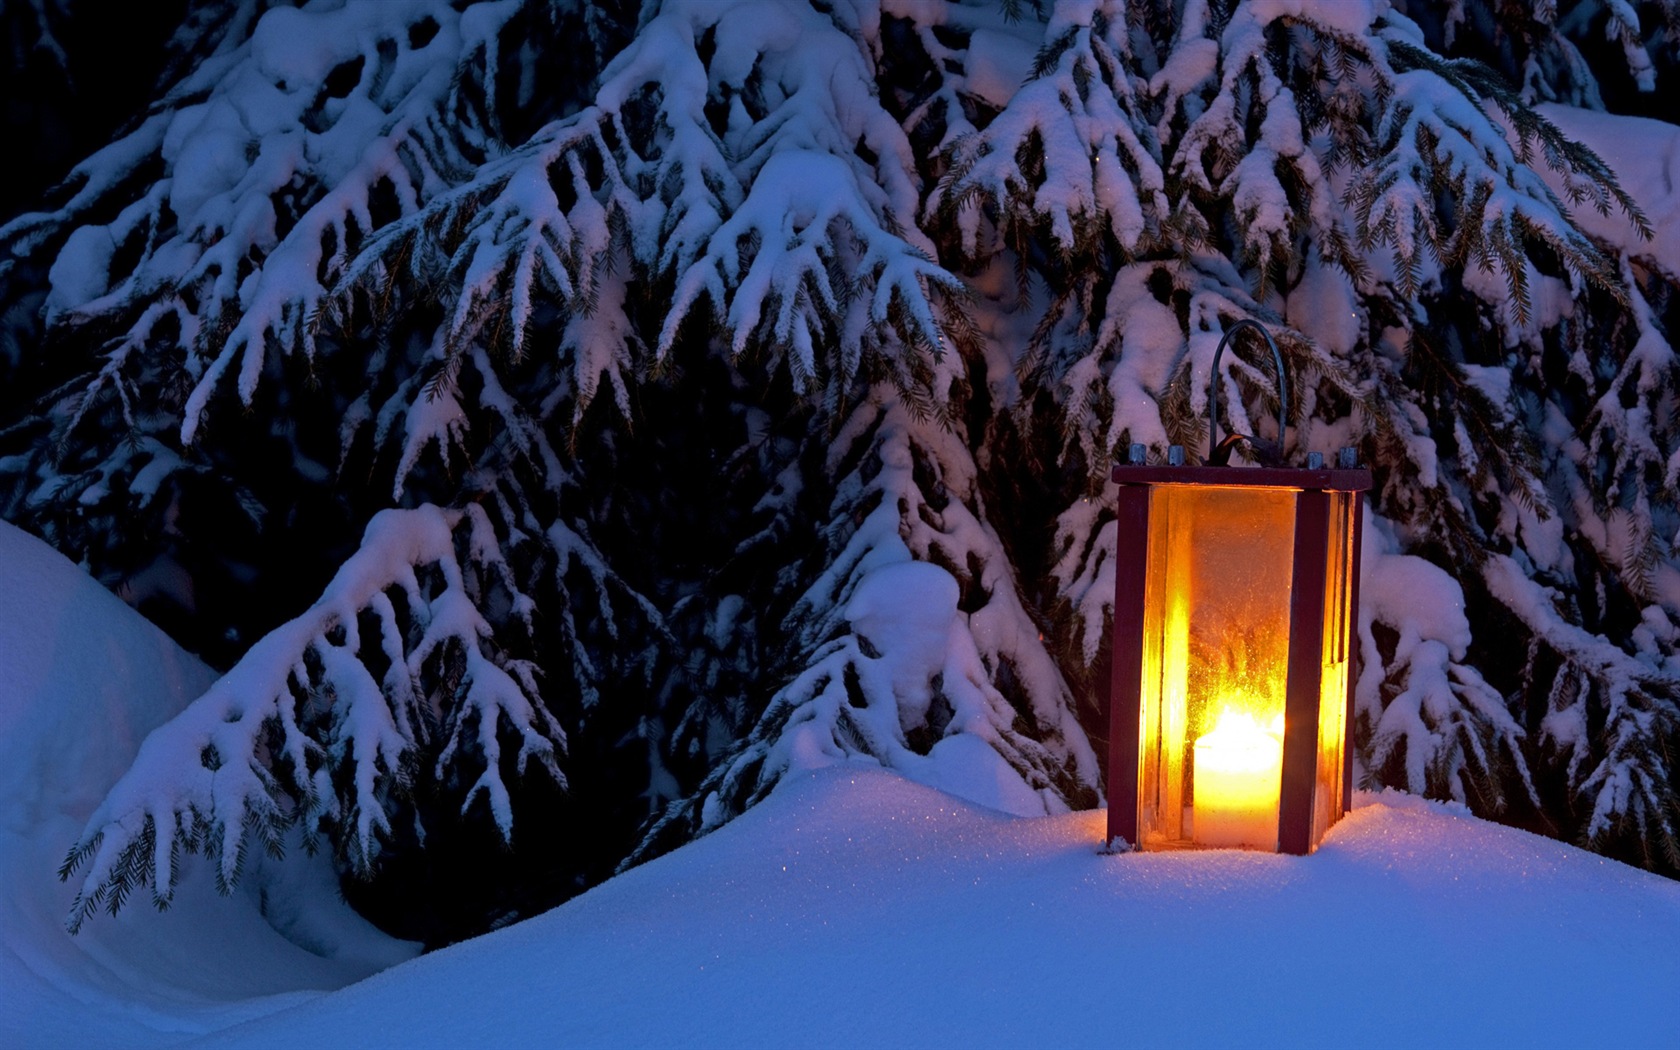 Windows 8 Theme HD Wallpapers: Nieve del invierno noche #2 - 1680x1050